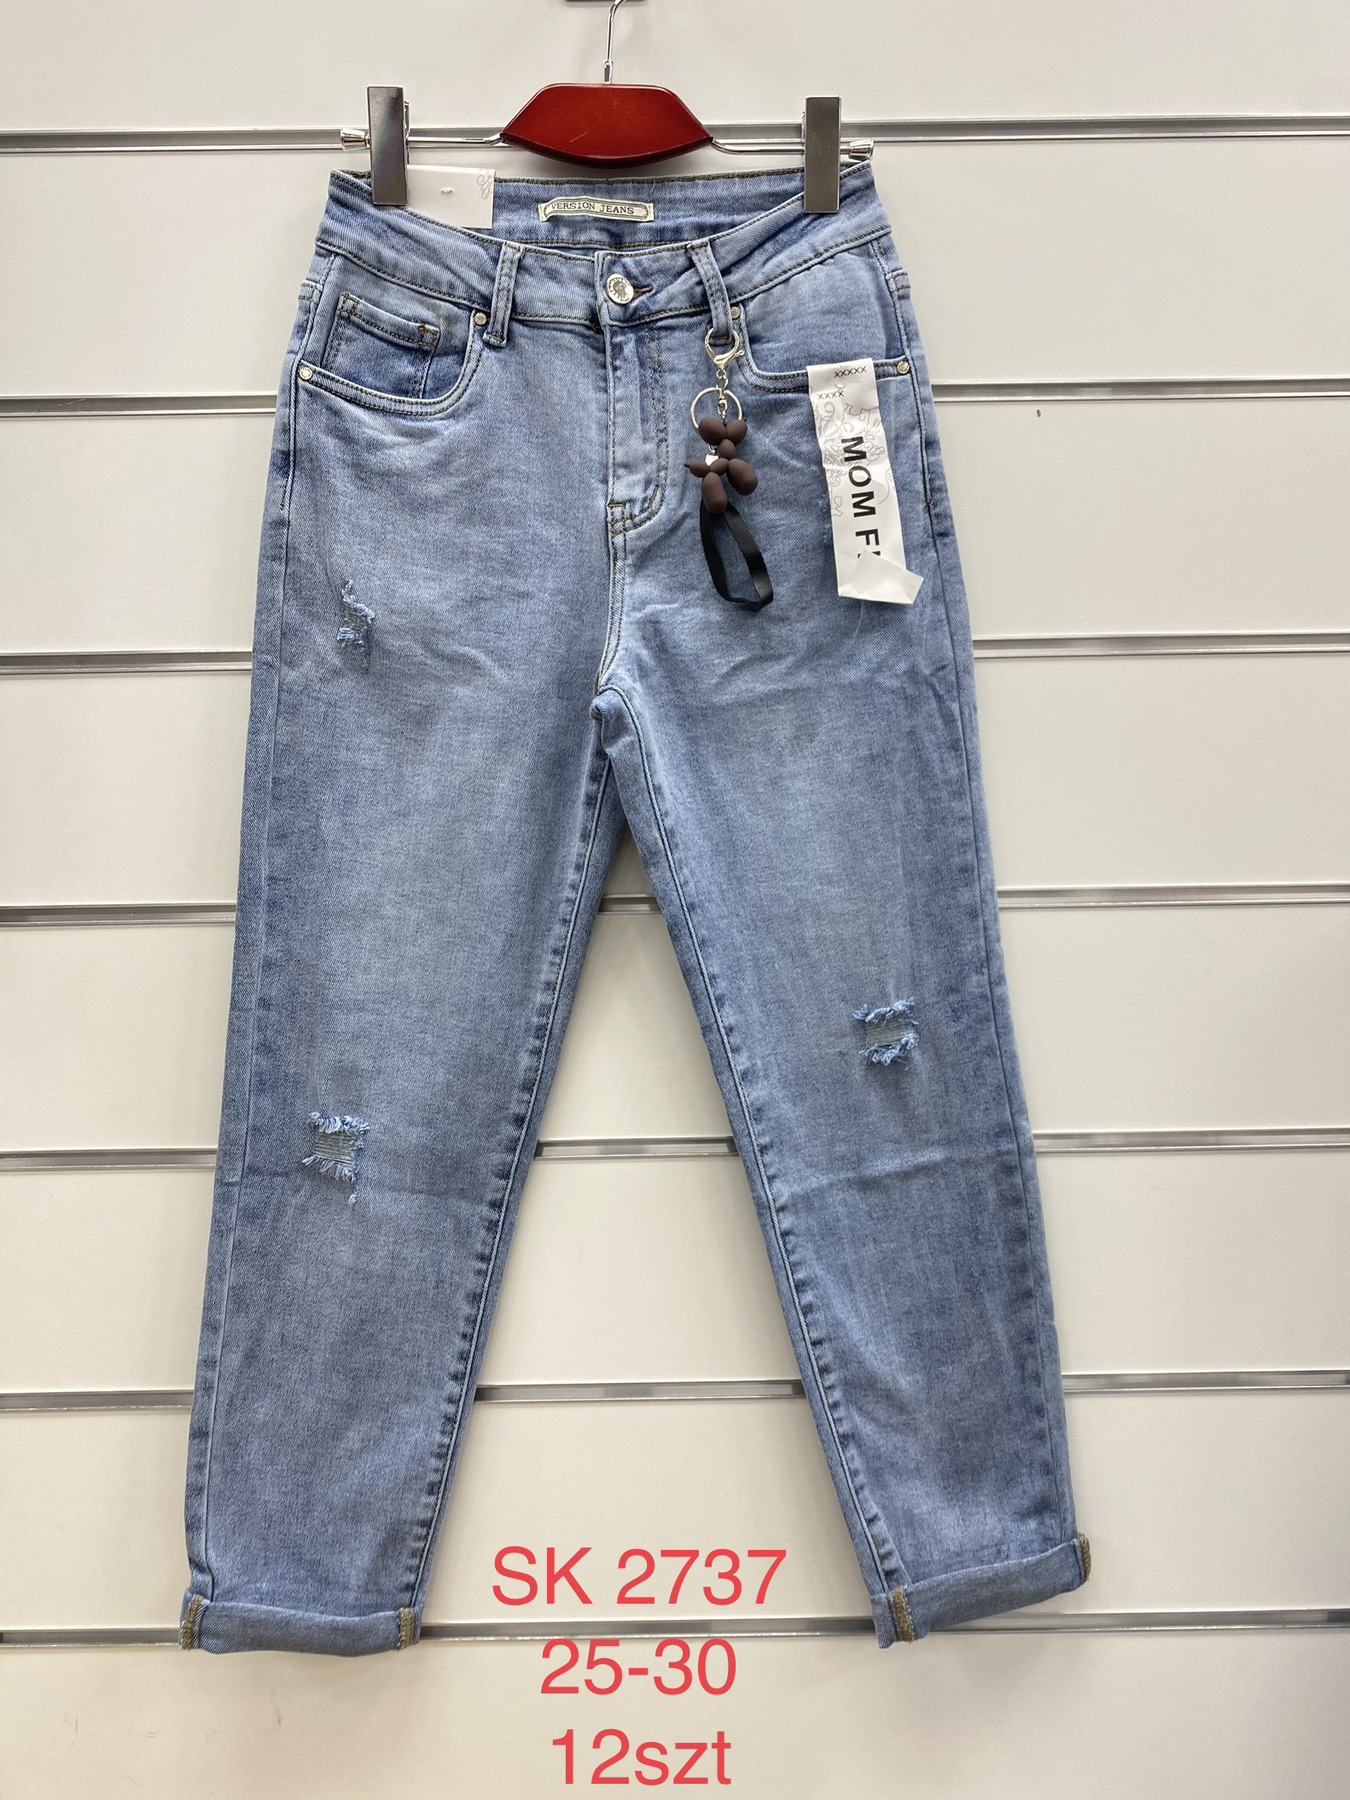 Spodnie damskie jeans Roz 295-30.  Paczka 12szt